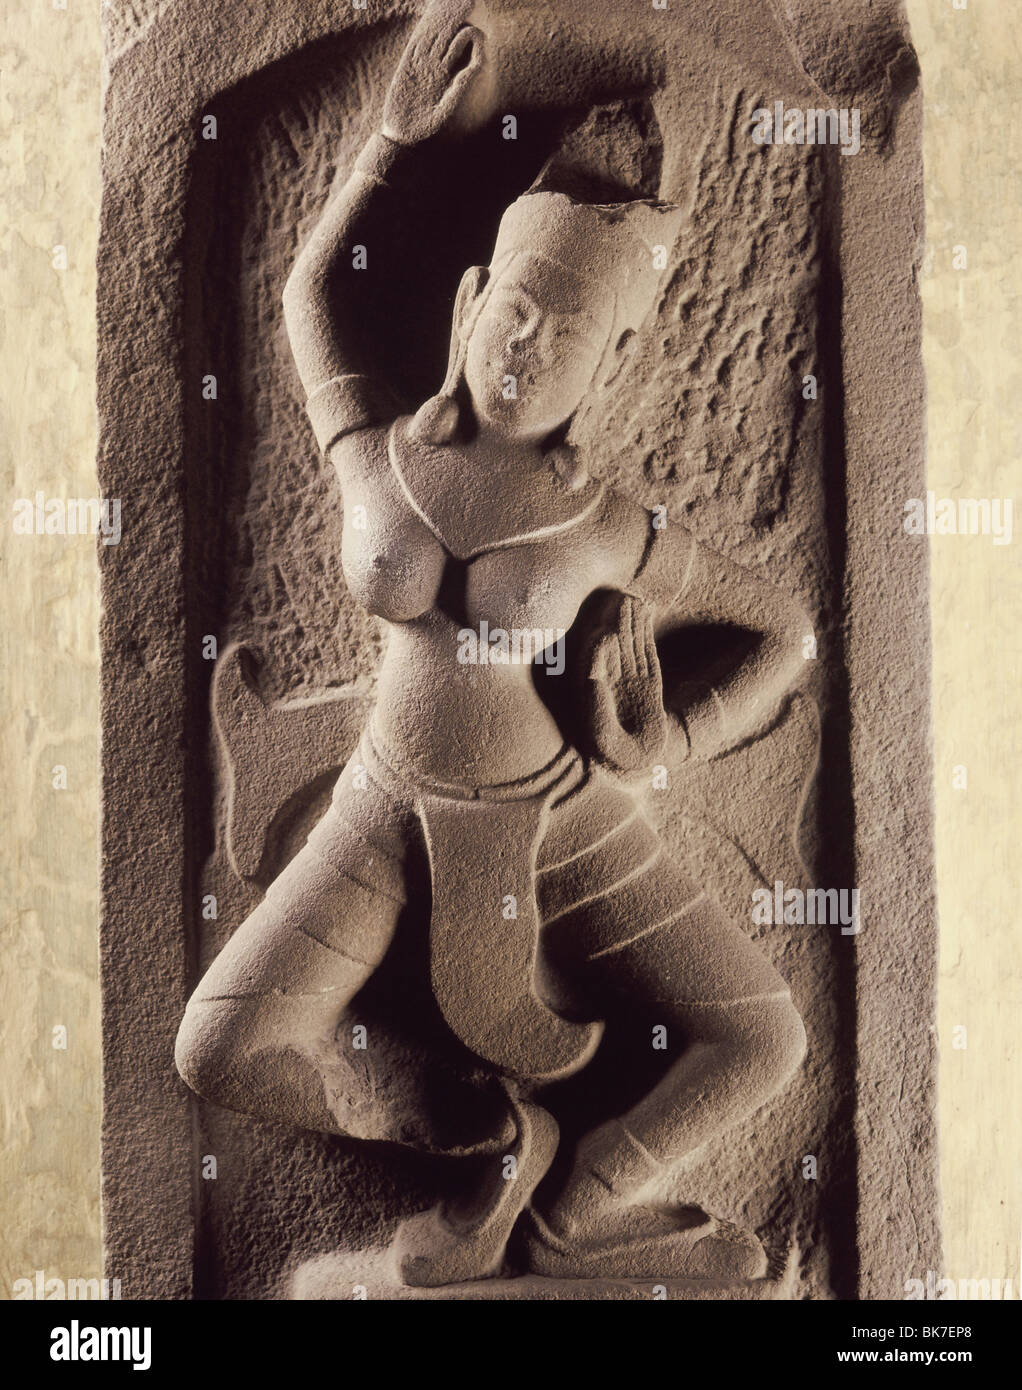 Danseur, Thap Cham'Art, style Mam datant du 12e siècle, le Musée Cham, Danang, Vietnam, Indochine, Asie du Sud, Asie Banque D'Images